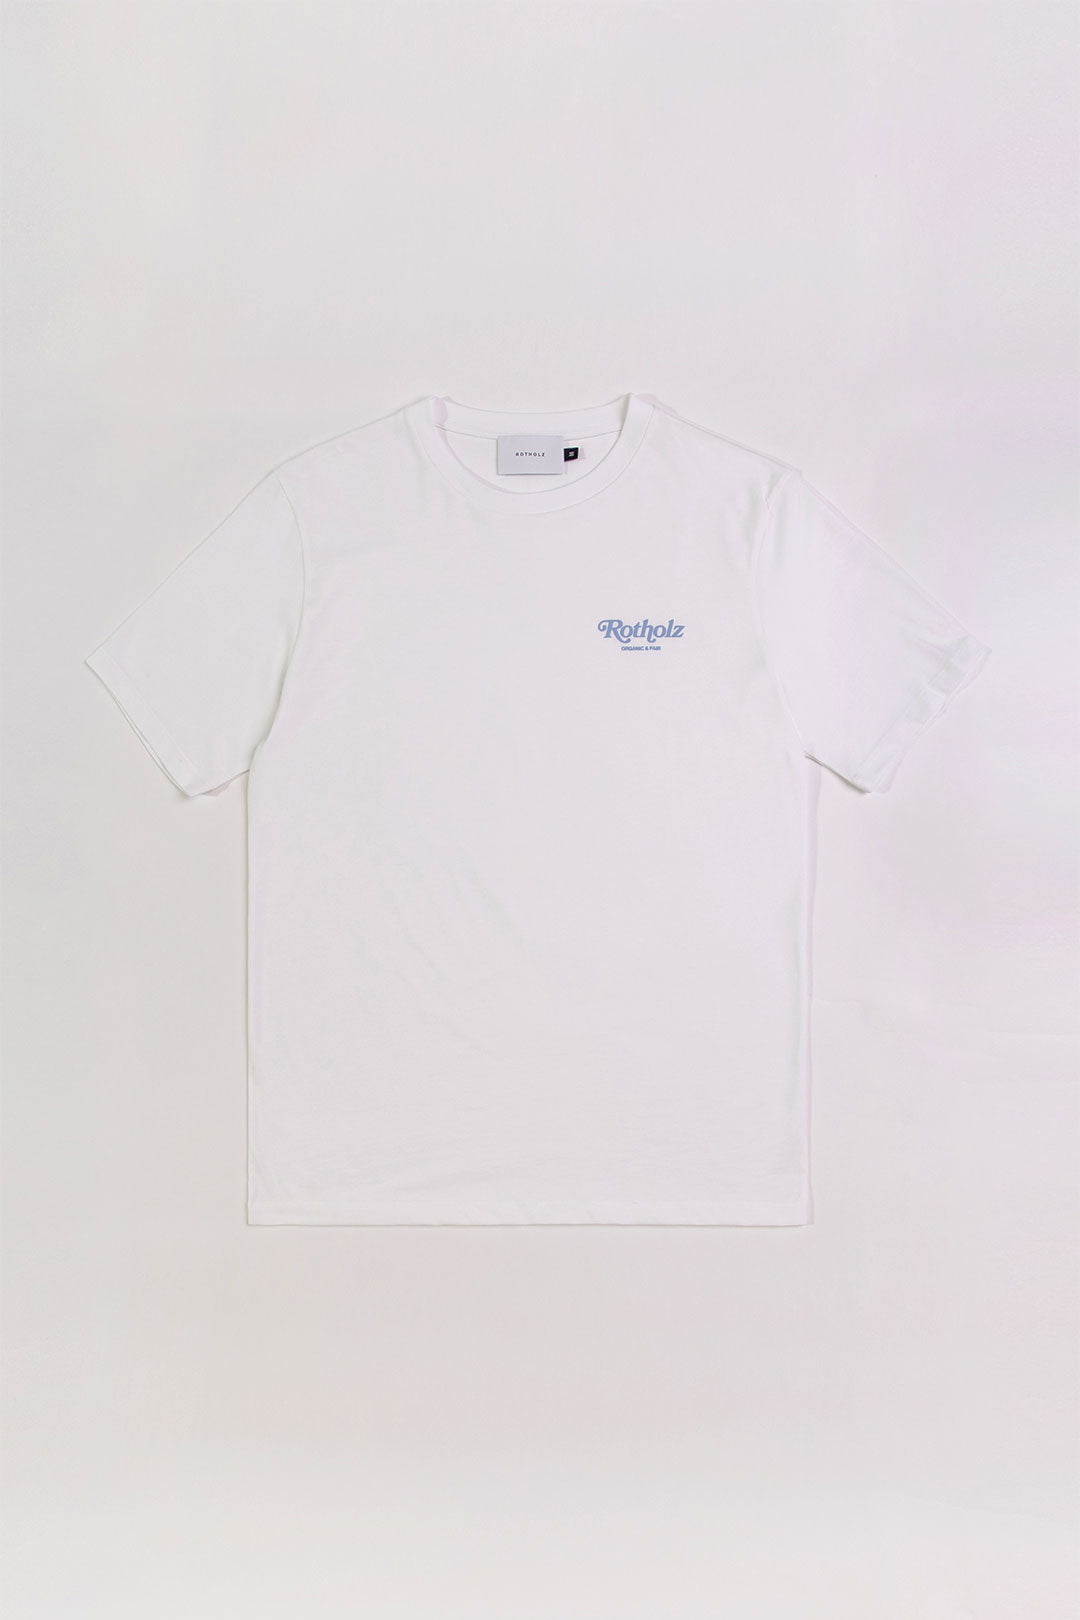 Retro Logo T-Shirt White